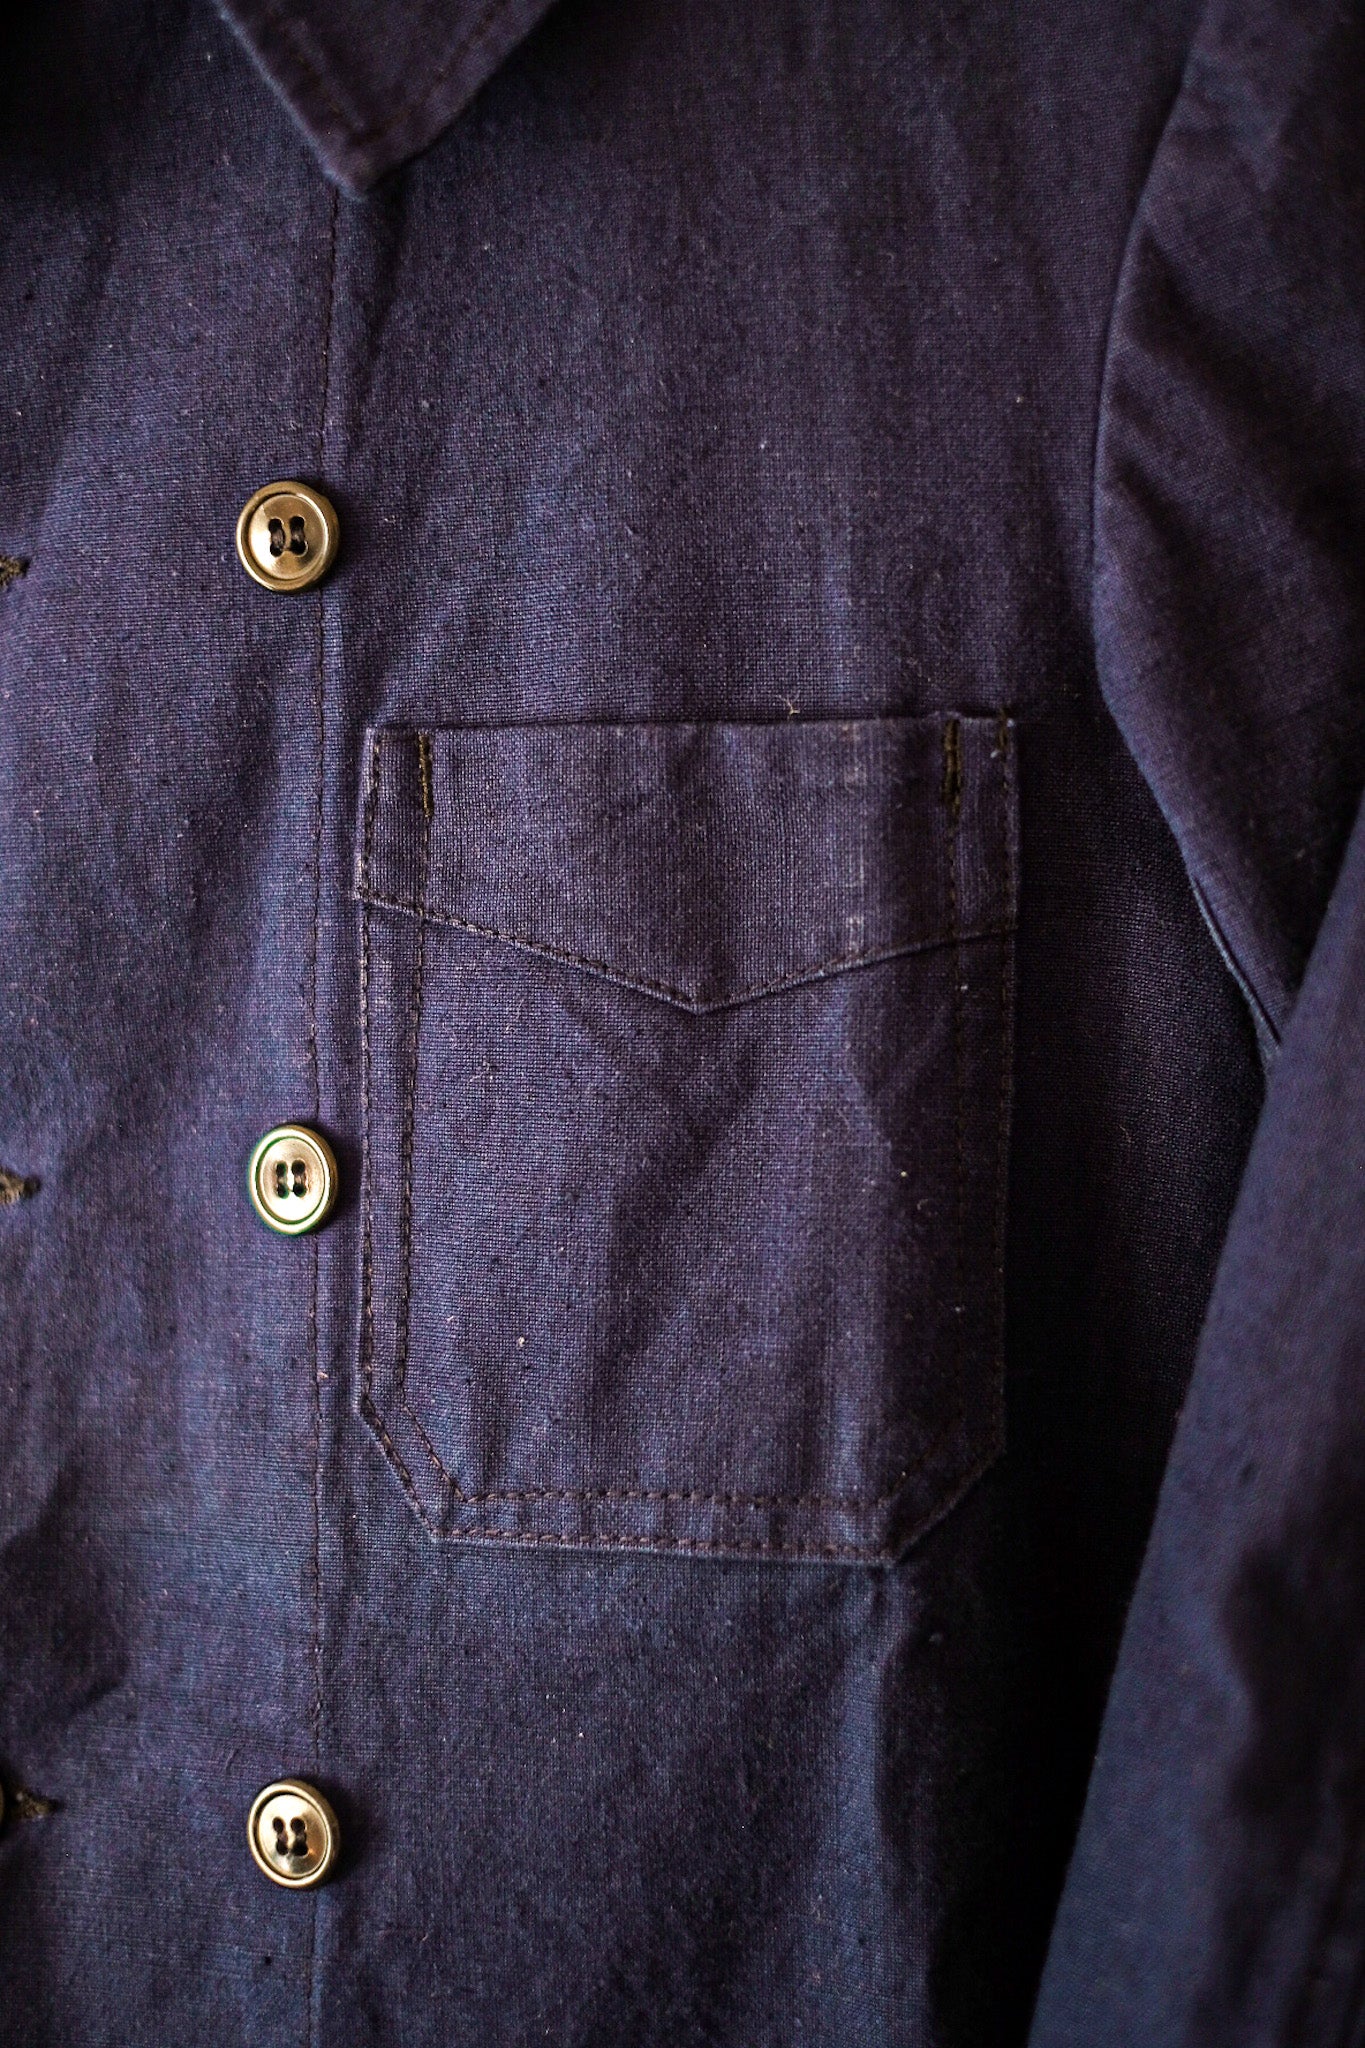 [〜30年代]法國復古雙胸件靛藍棉布亞麻布工作夾克“死庫存”